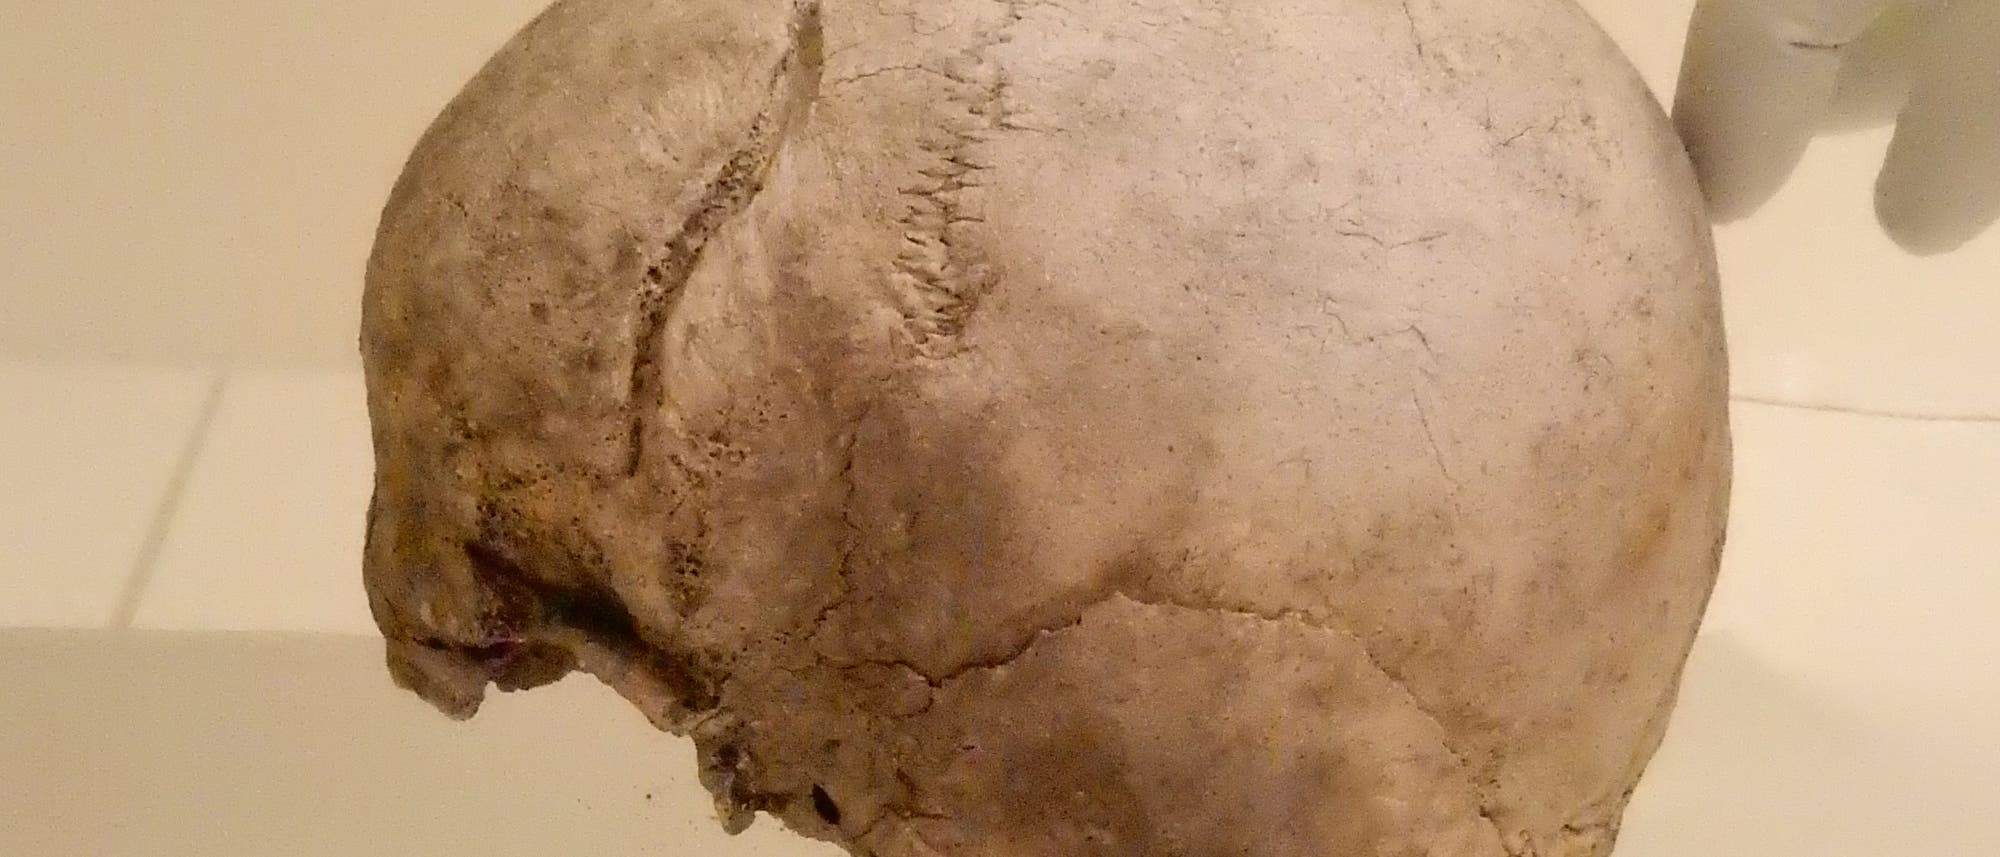 Schädel aus dem schwedischen Ölsund von zirka 2300 vor Christus, der im MPI für Menschheitsgeschichte in Jena lagert